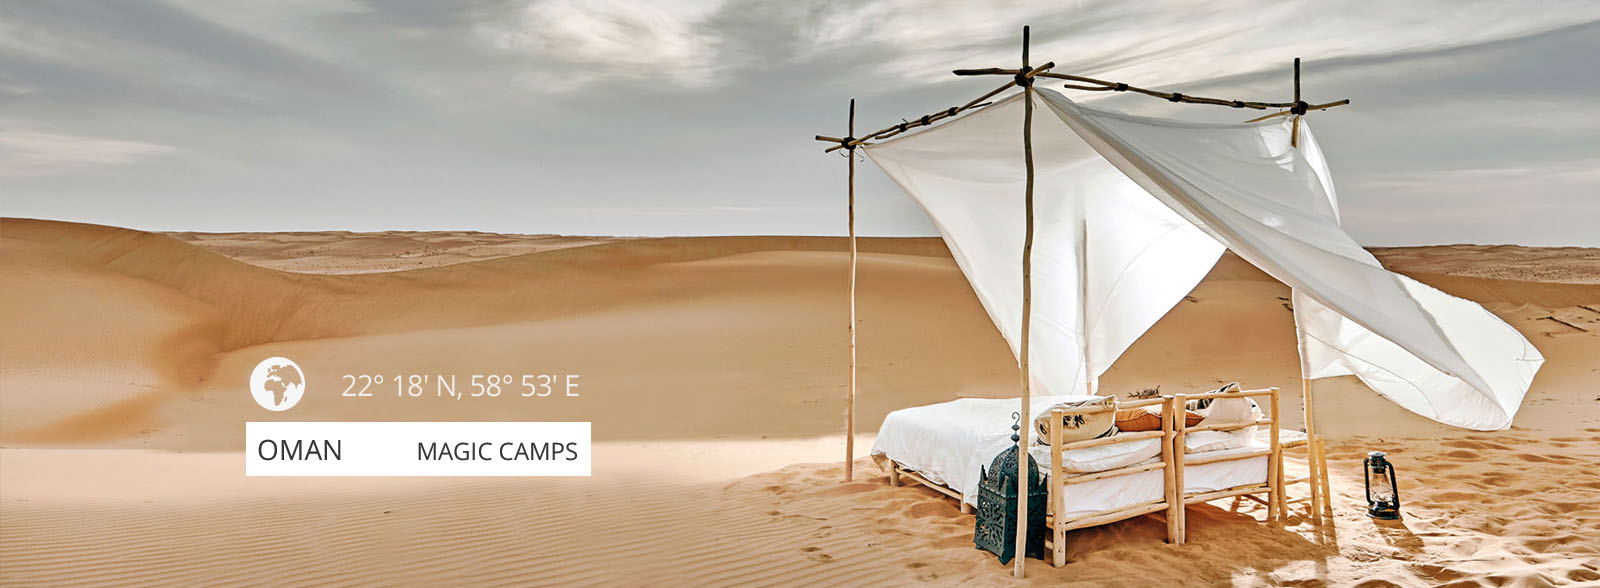 Oman Magic Camps